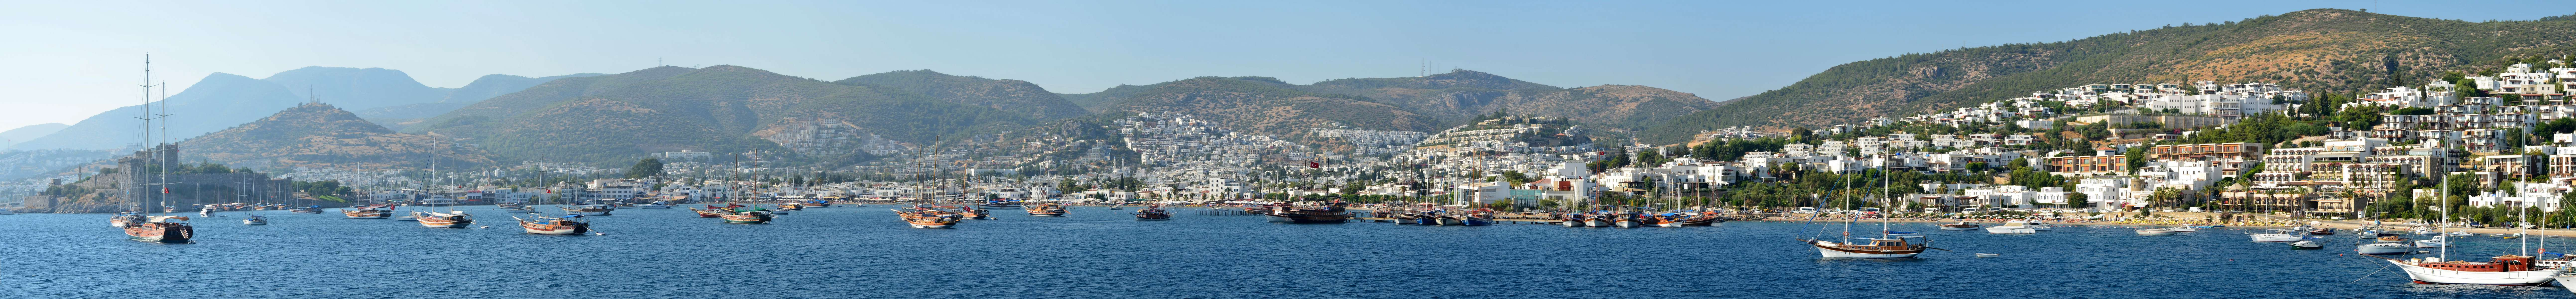 Port of Bodrum - Turkey.jpg